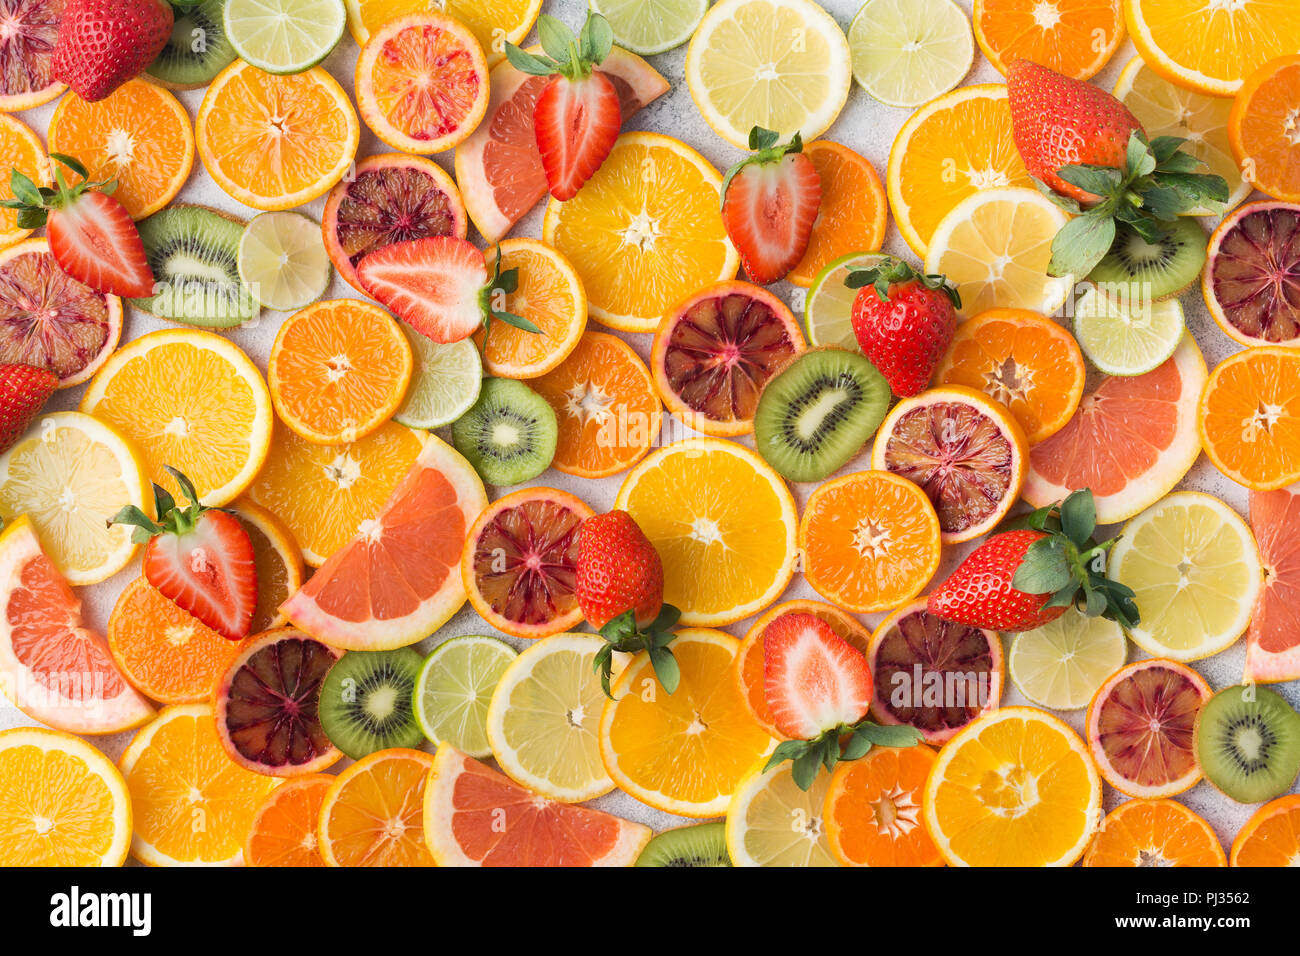 Modèle des fruits colorés, les oranges, les clémentines, les oranges, kiwis, fraises et pamplemousses sur tableau blanc arrière-plan, Vue de dessus, selective focus Banque D'Images